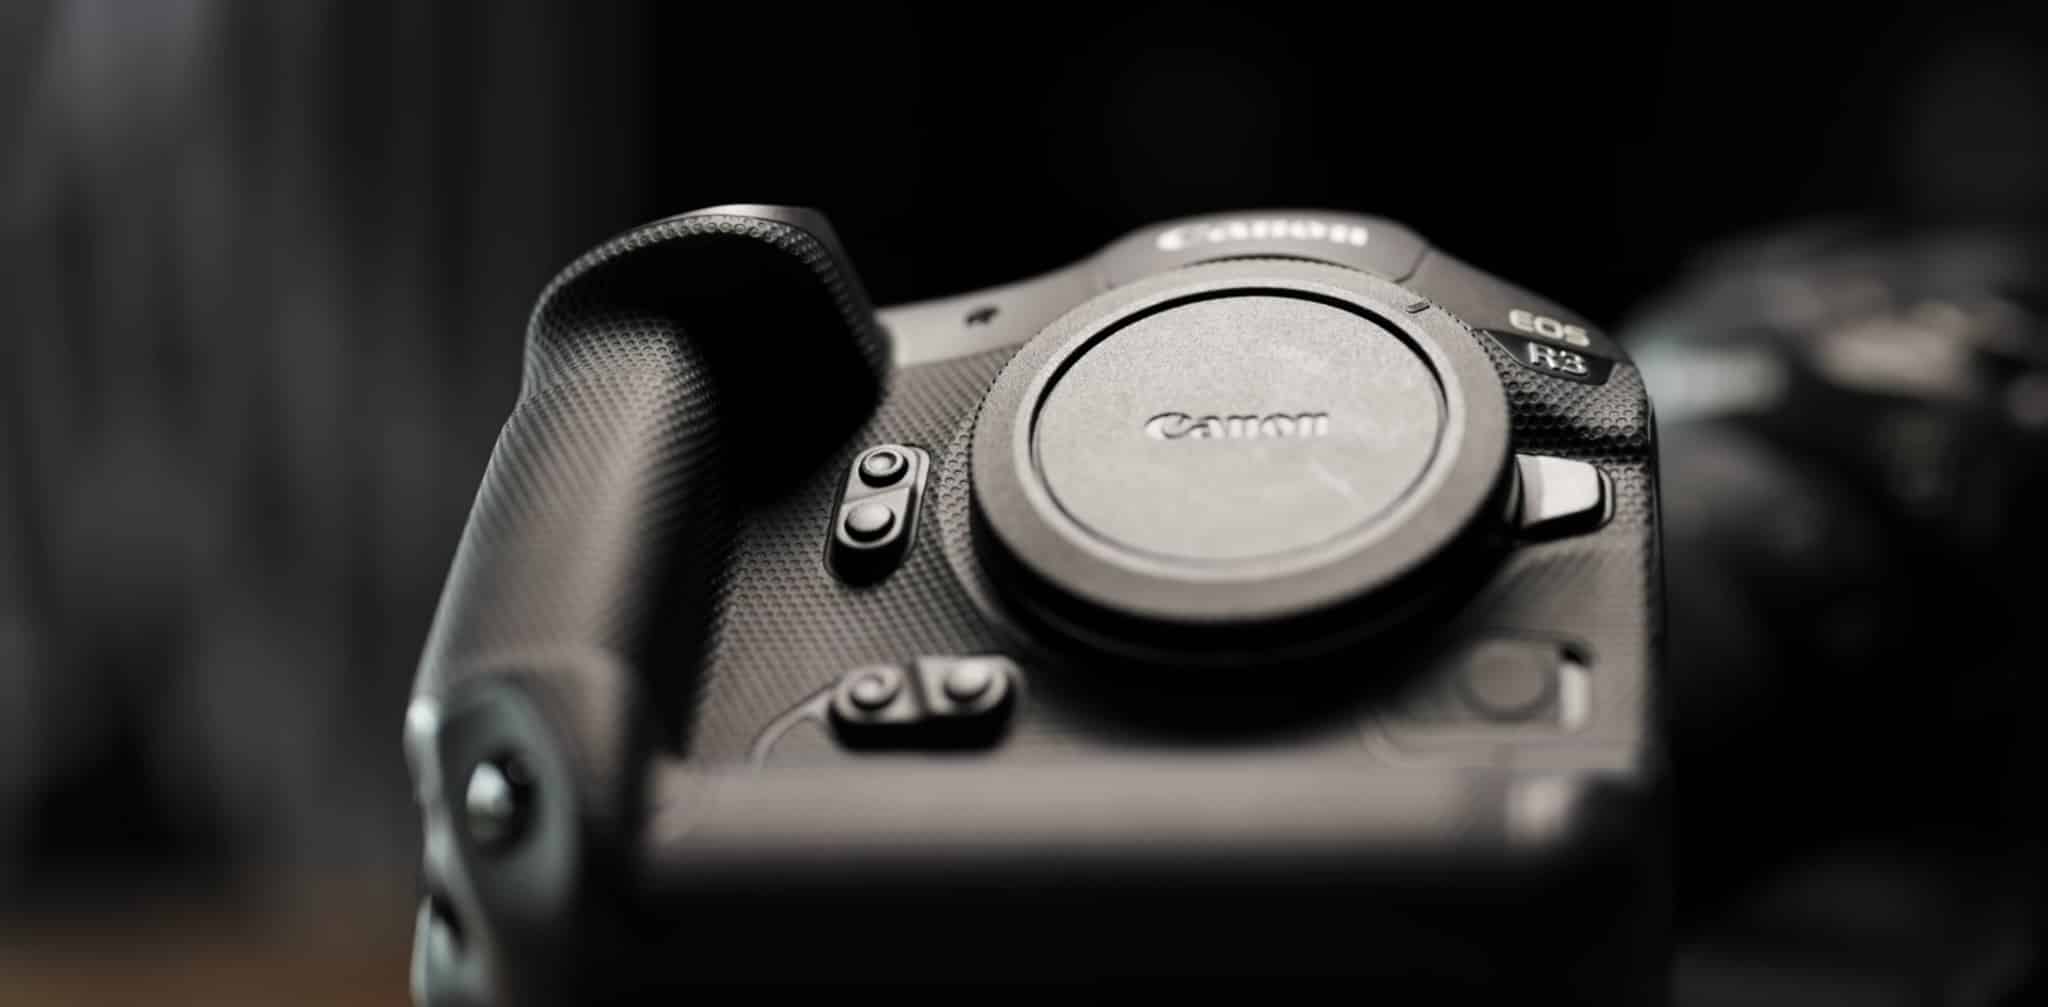 Trên tay máy ảnh Canon EOS R3 từ nhiếp ảnh gia Peter McKinnon: SIÊU NHANH!